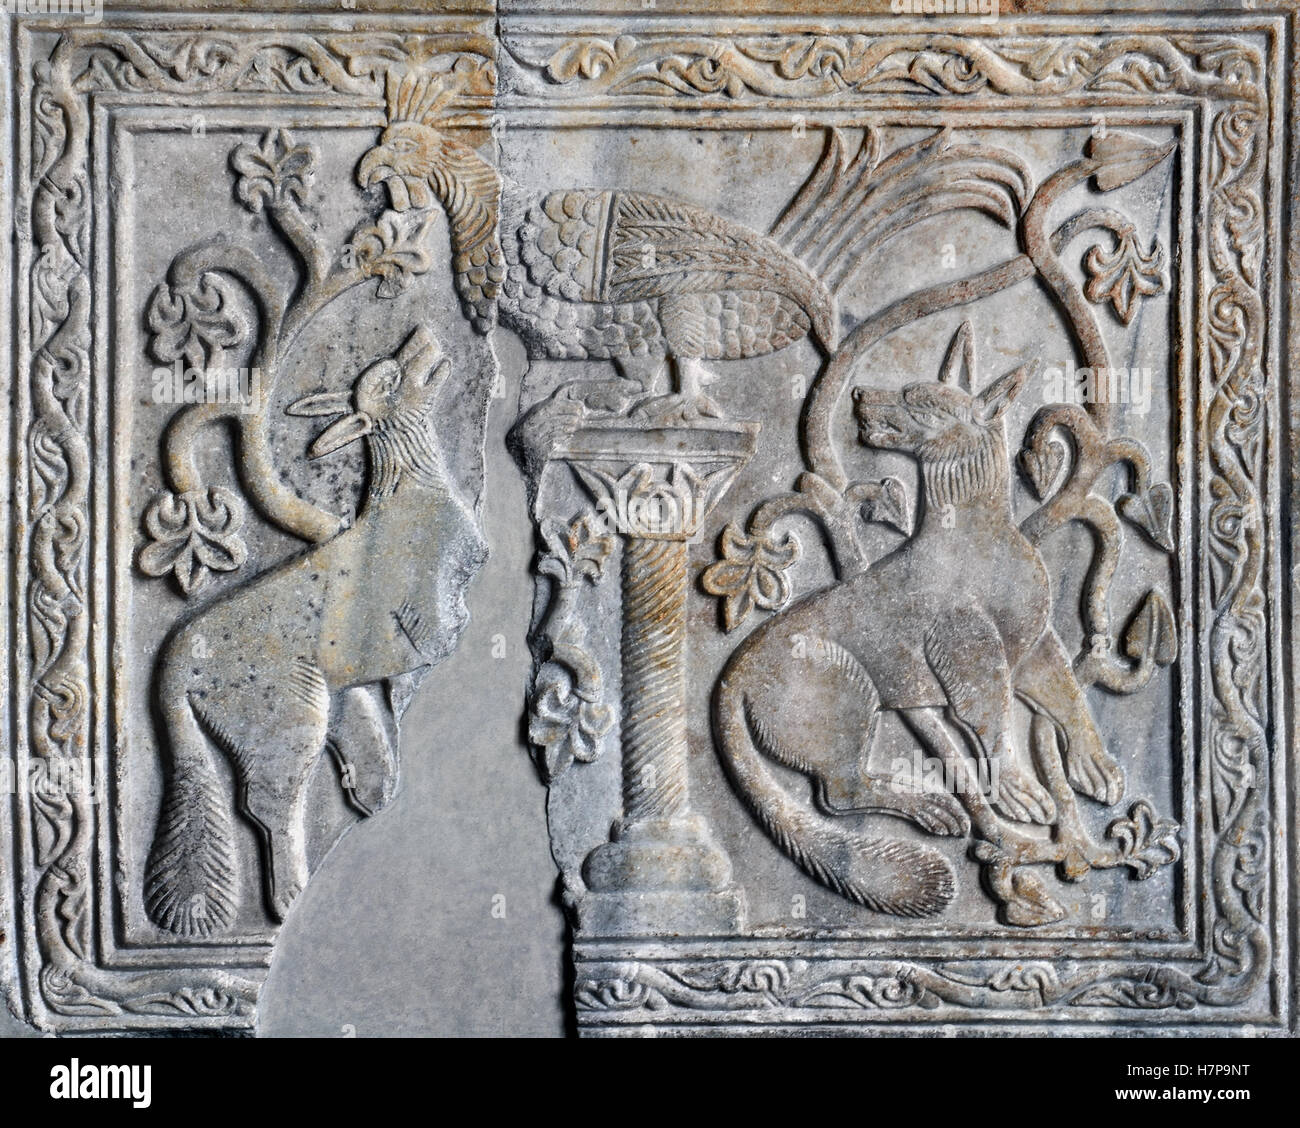 Fables d'animaux secours ancienne 13ème siècle icône Constantinople Istanbul Turquie Turc Banque D'Images